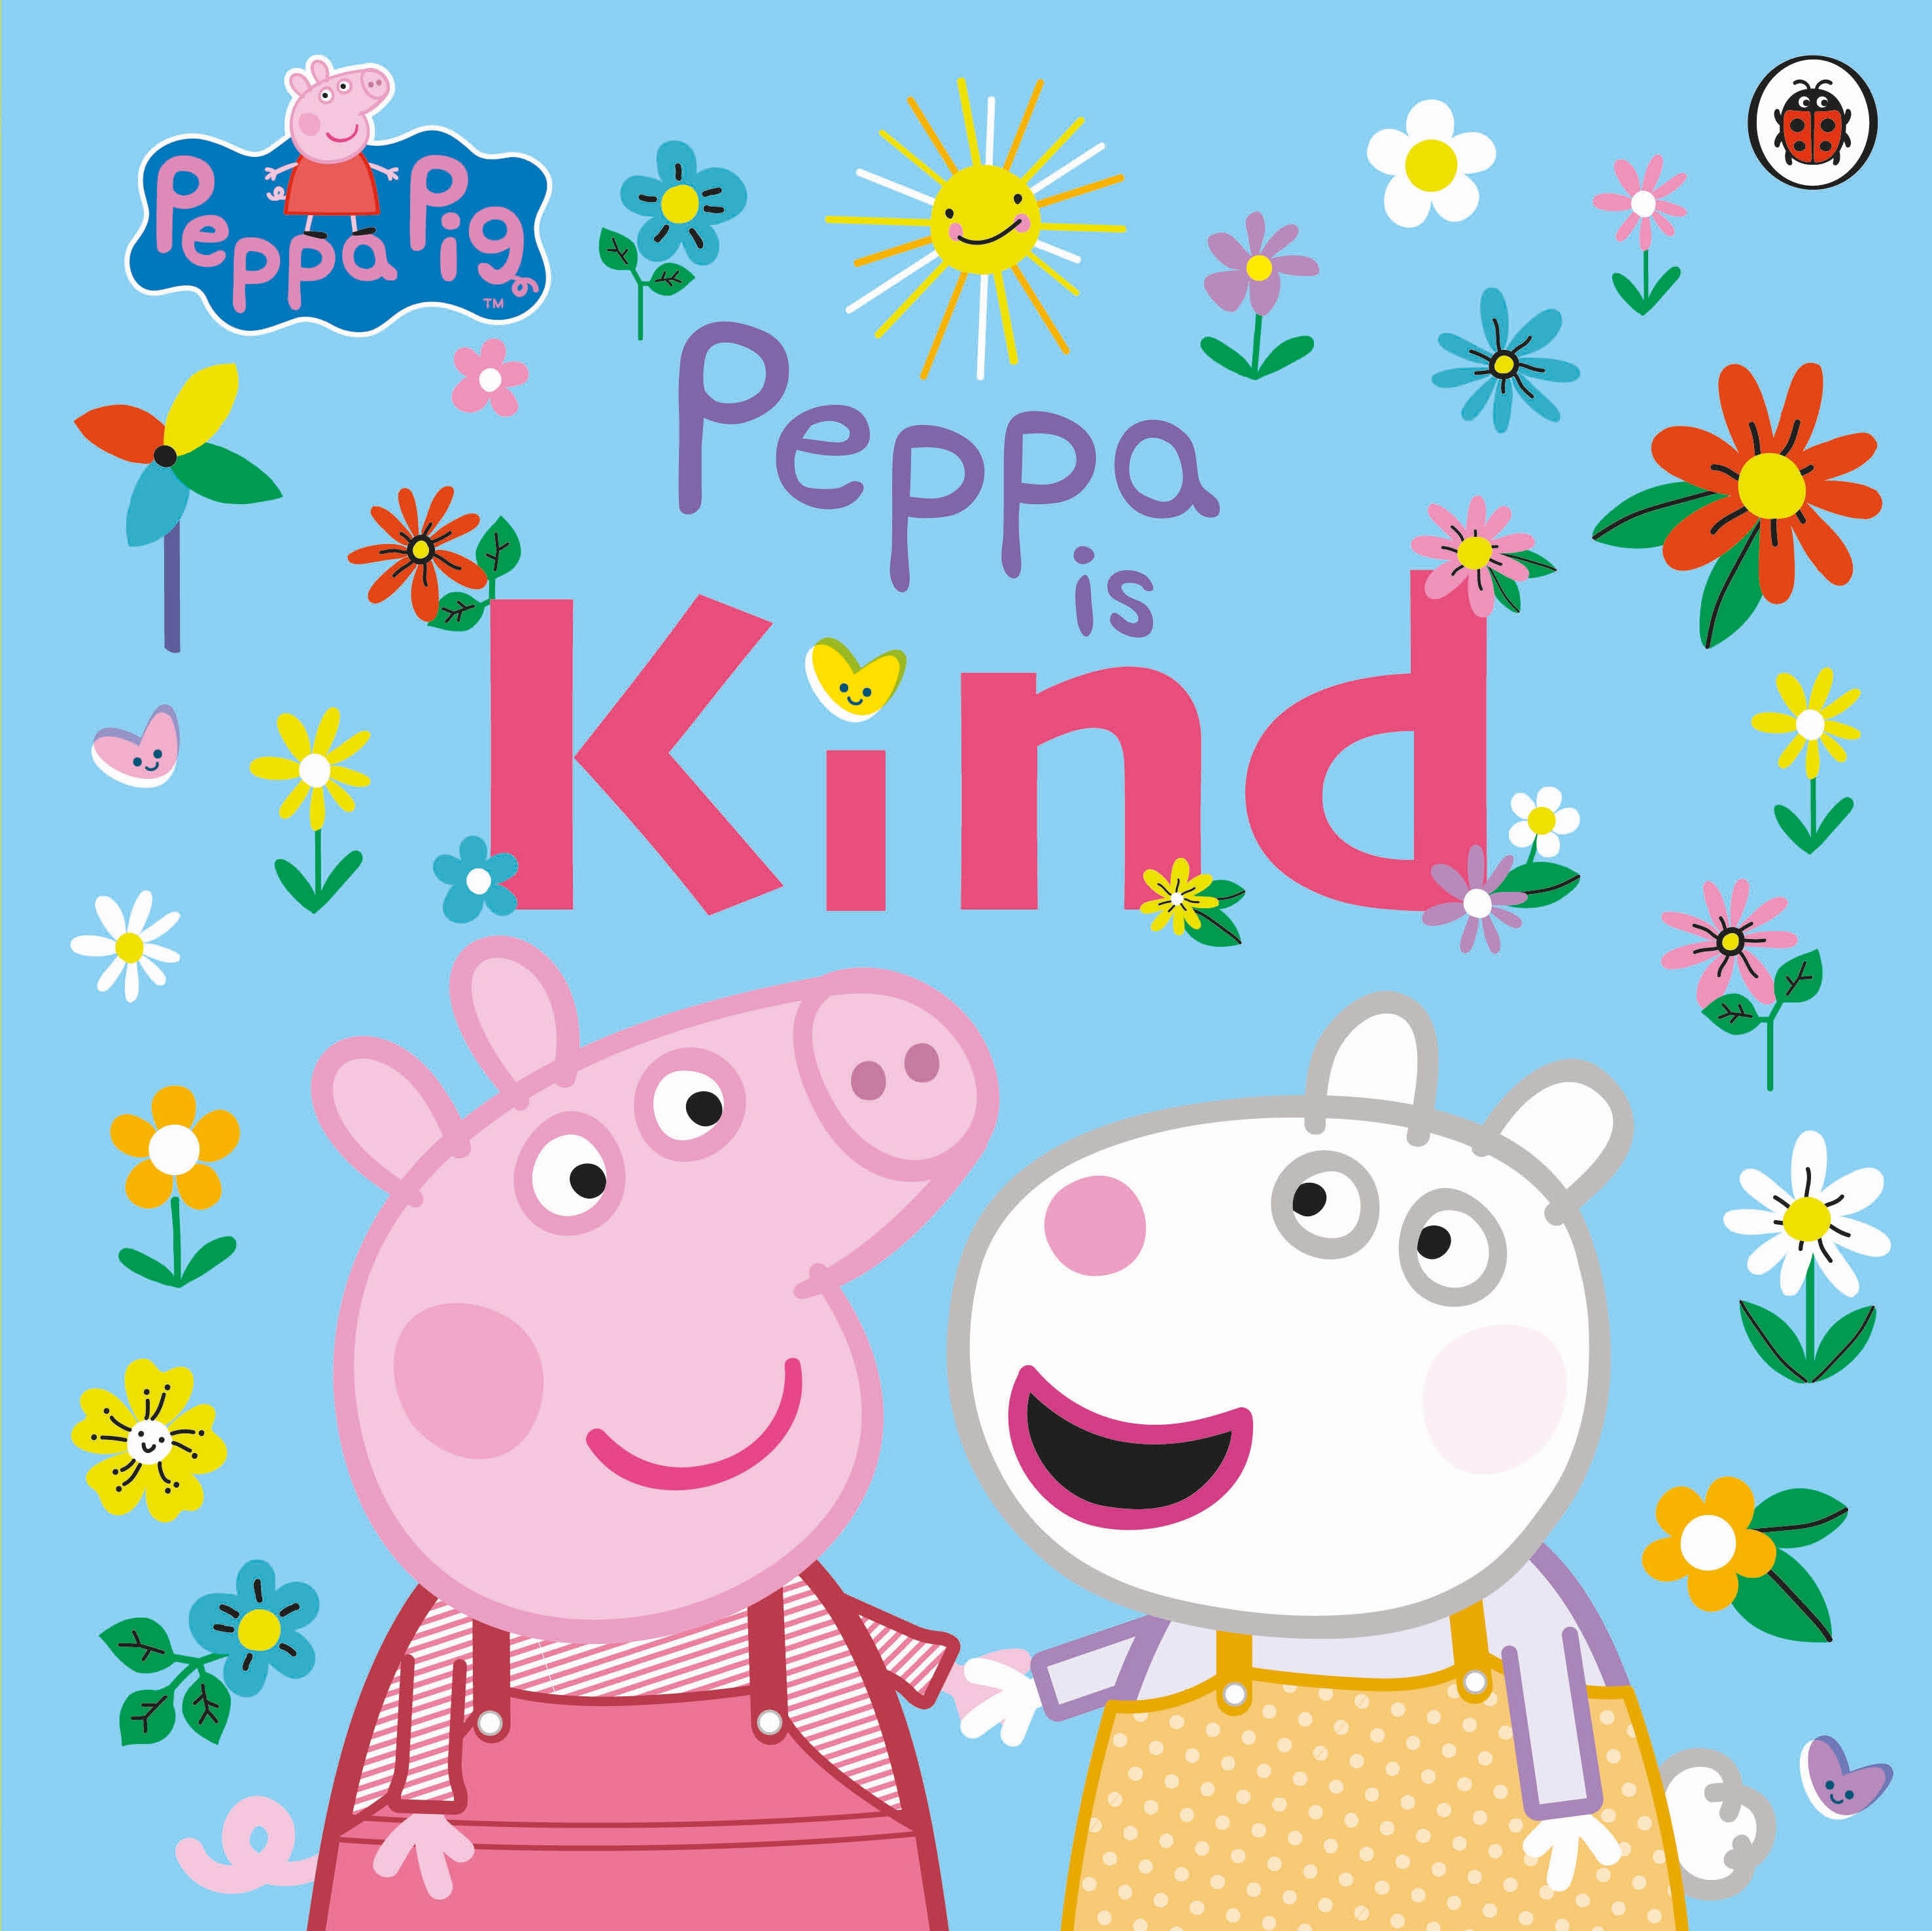 Book “Peppa Pig: Peppa Is Kind” by Peppa Pig — December 30, 2021